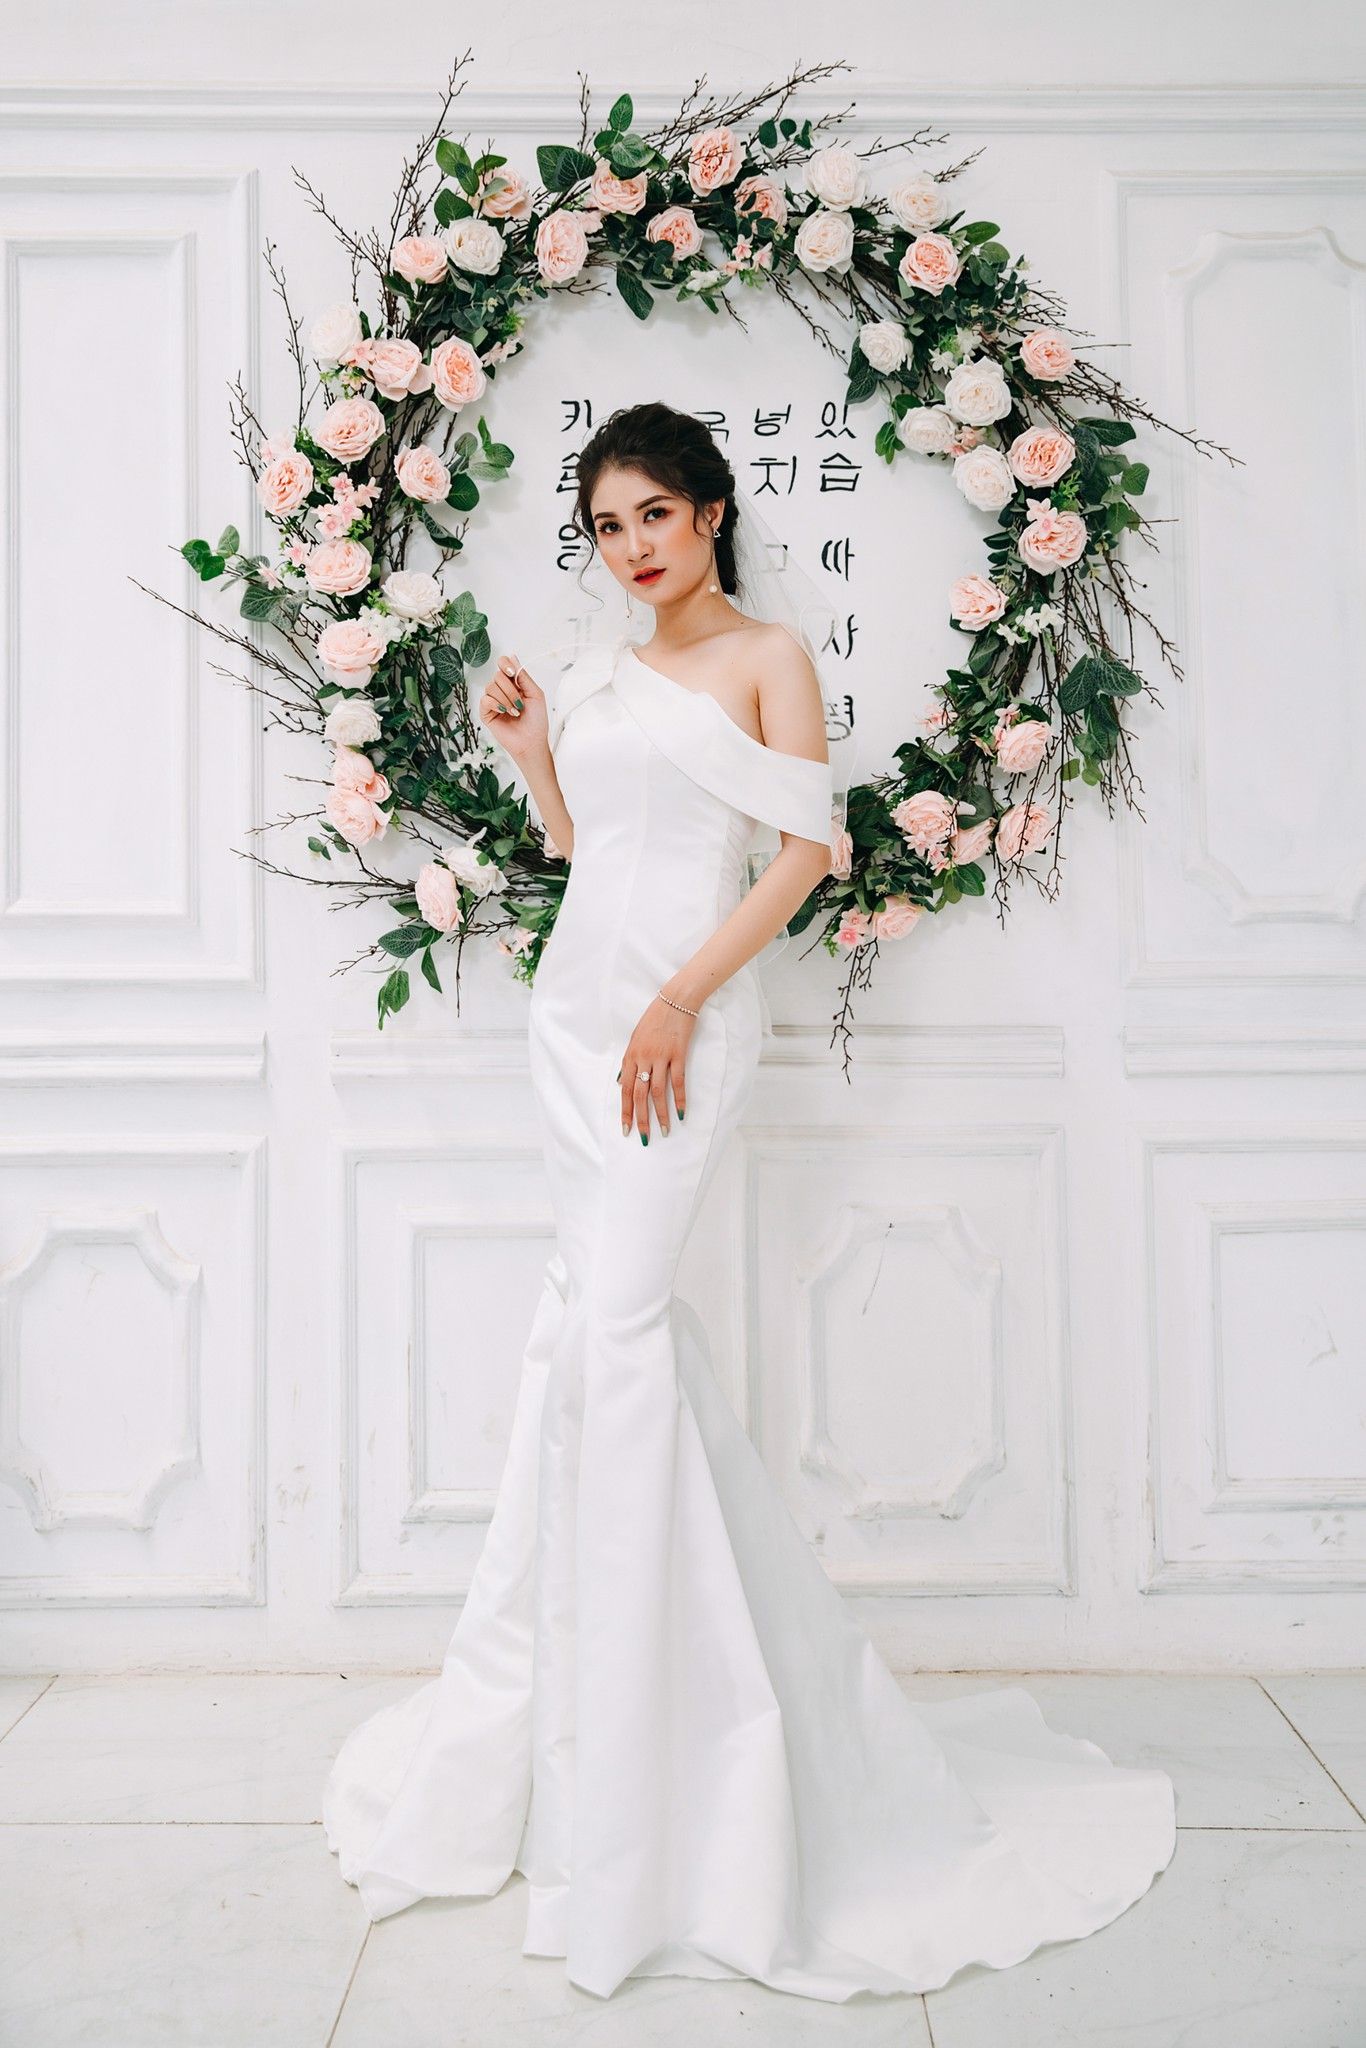 Đầm cưới Mia Selena thiết kế nơ vai một bên tuyệt đẹp ( Trắng )